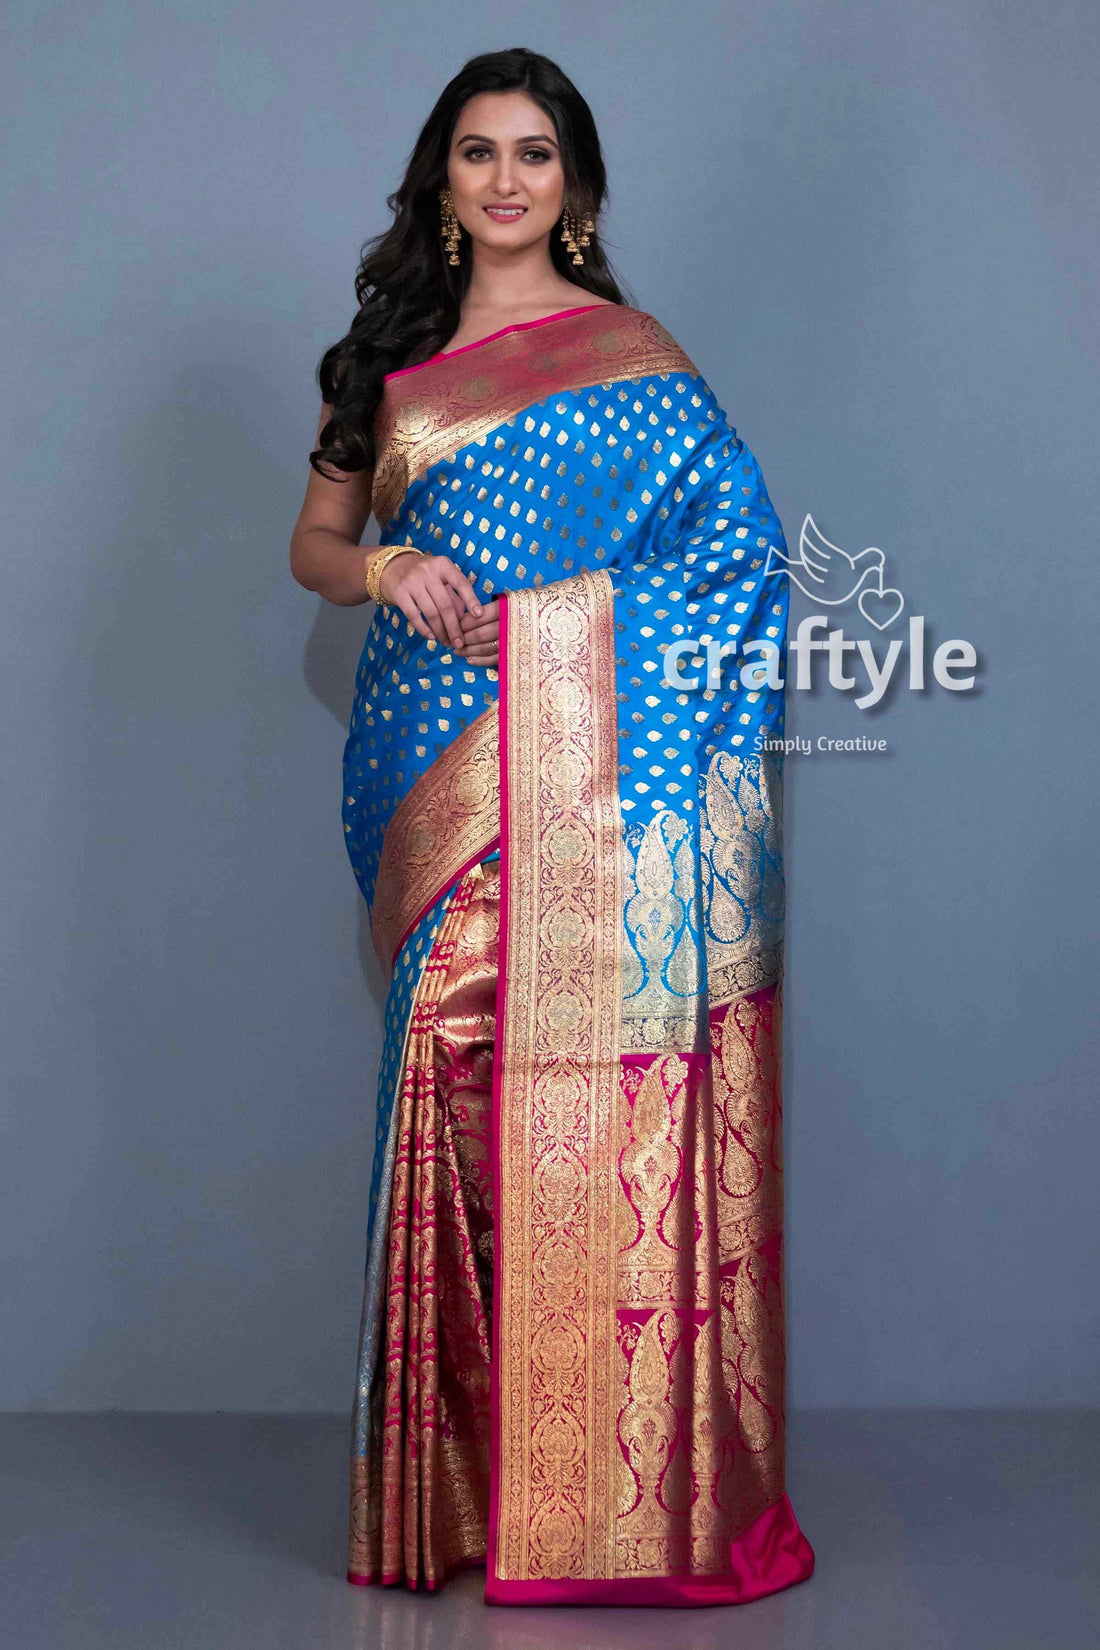 Cerulean Blue Satin Silk Banarasi Sari for Women - Craftyle